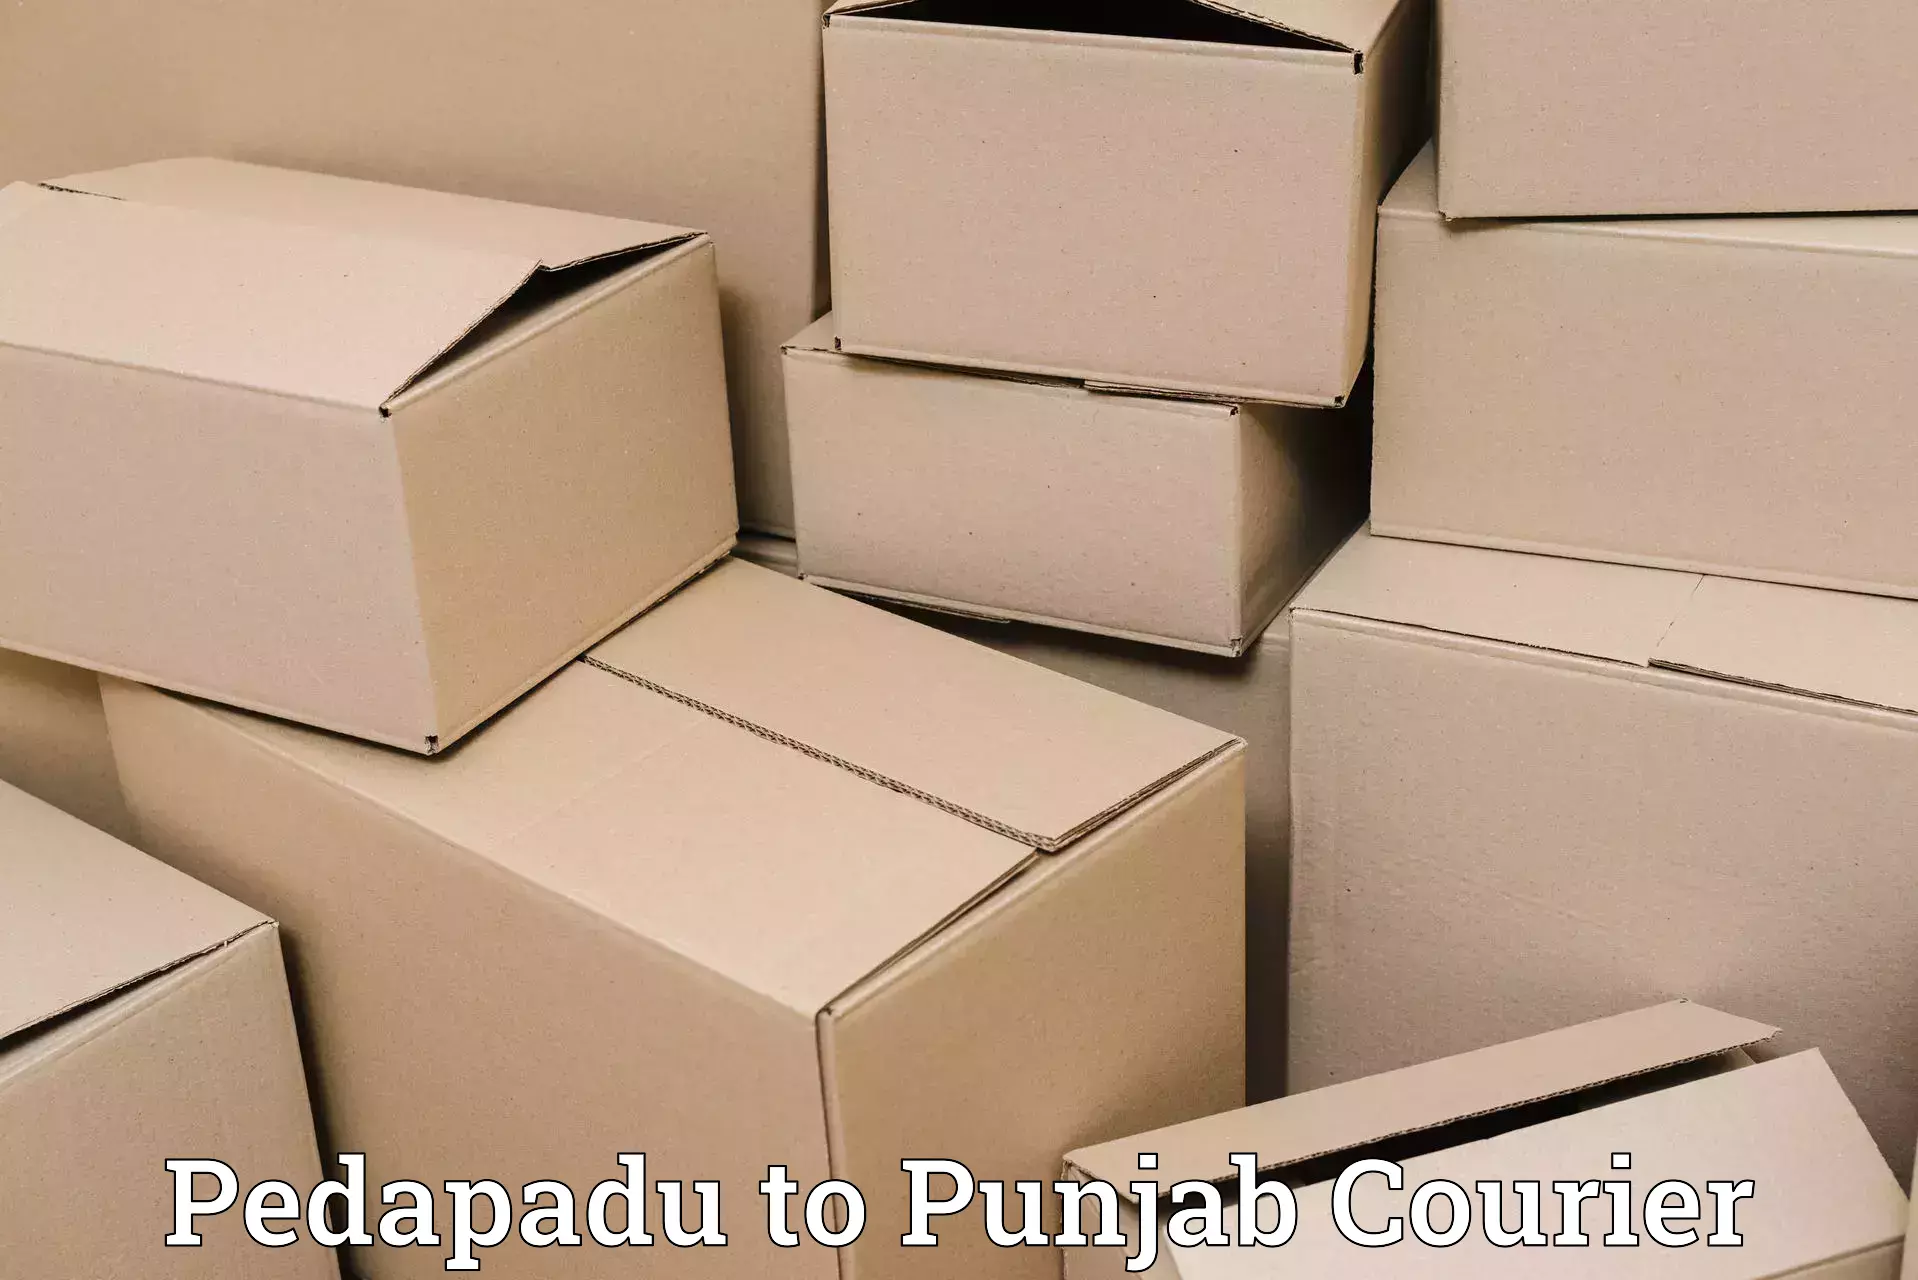 Ocean freight courier Pedapadu to Mandi Gobindgarh